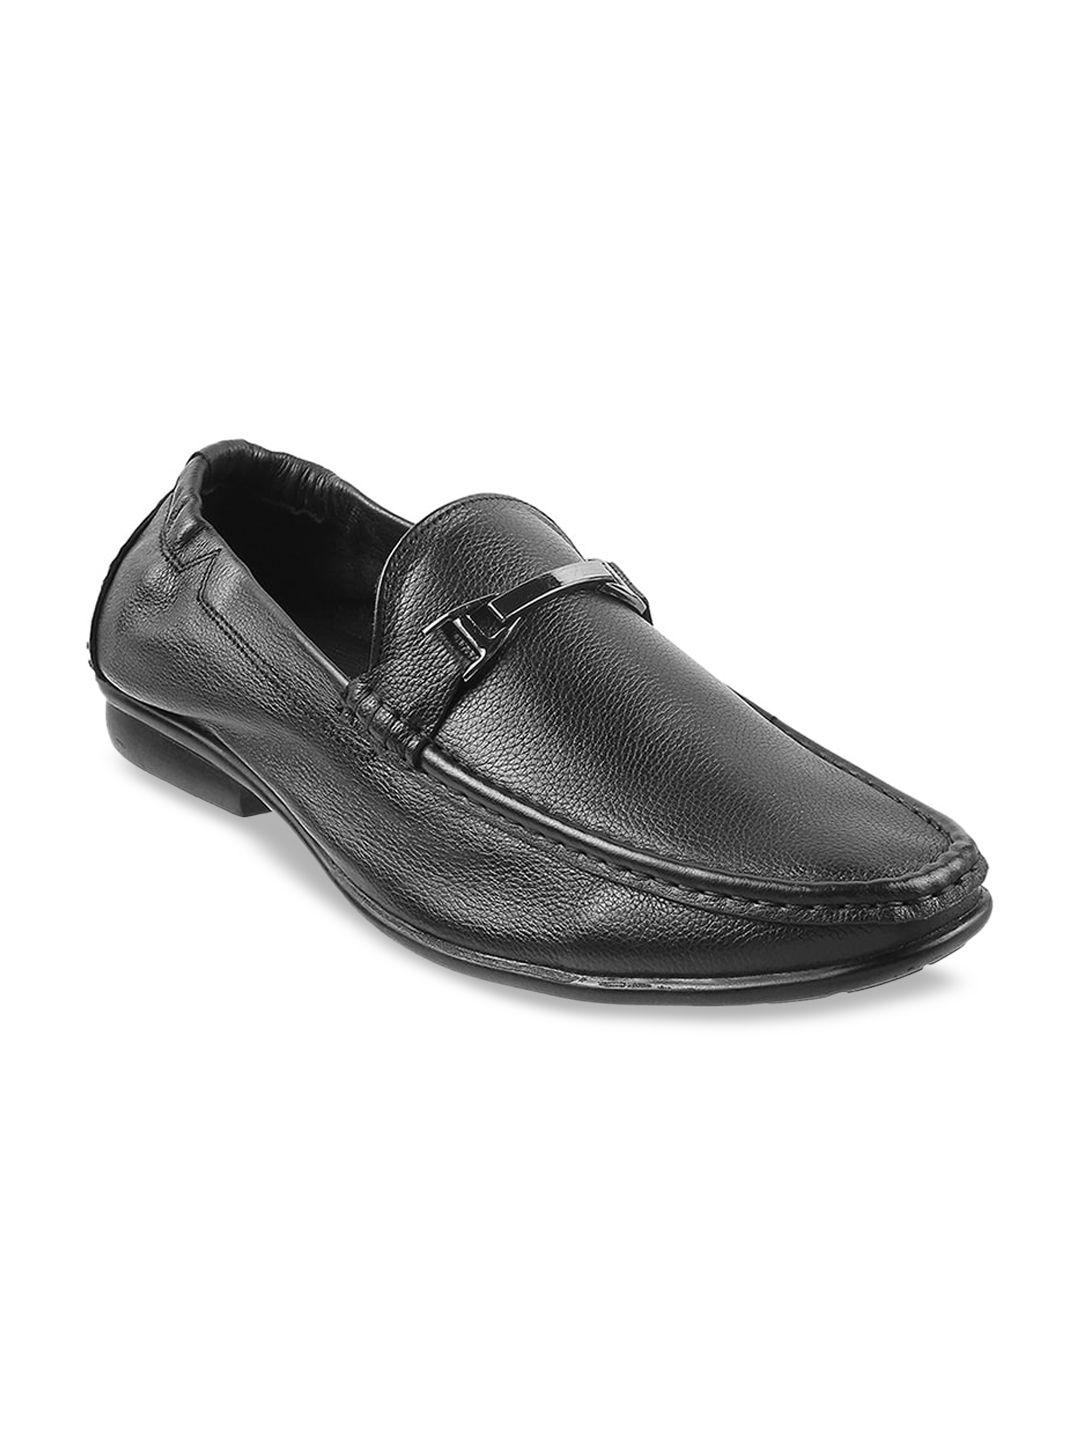 mochi men black leather loafers